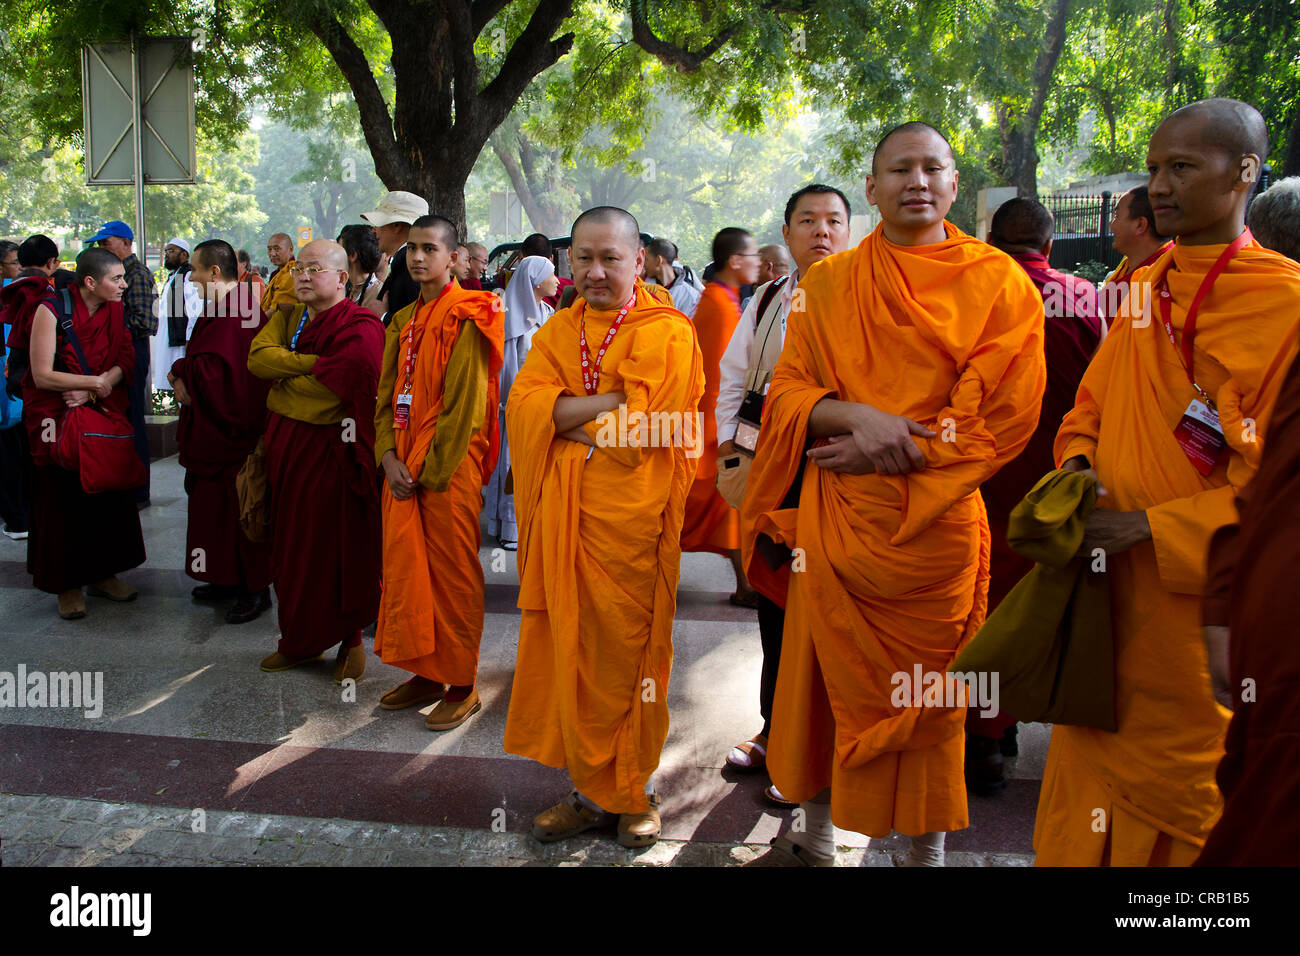 Les moines portant des robes rouge et orange et des dignitaires bouddhistes  de Laos, Birmanie, Myanmar, Cambodge, Corée, Tibet Bouddhiste de tous les  Photo Stock - Alamy